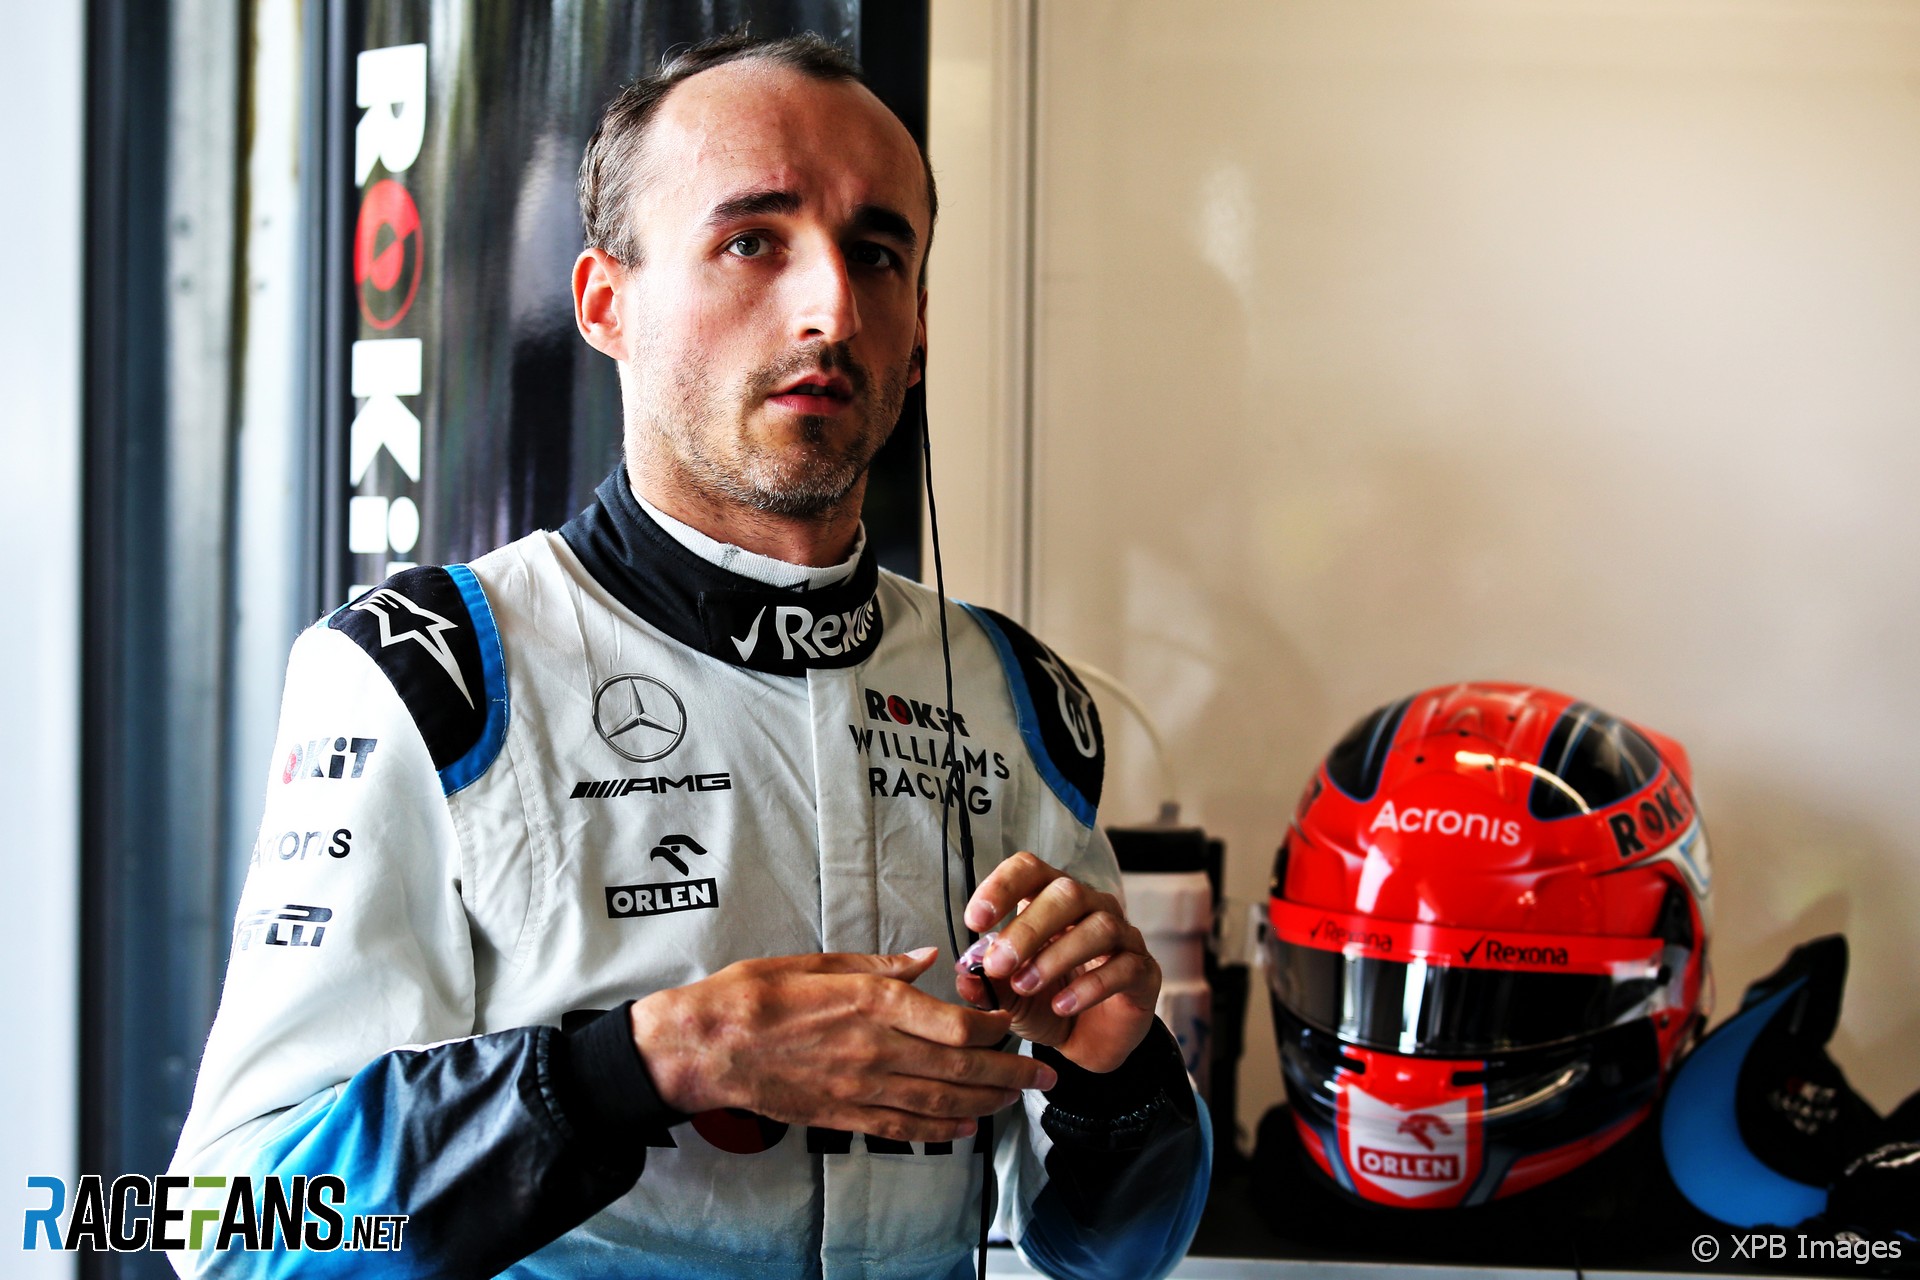 Robert Kubica, Williams, Baku City Circuit, 2019